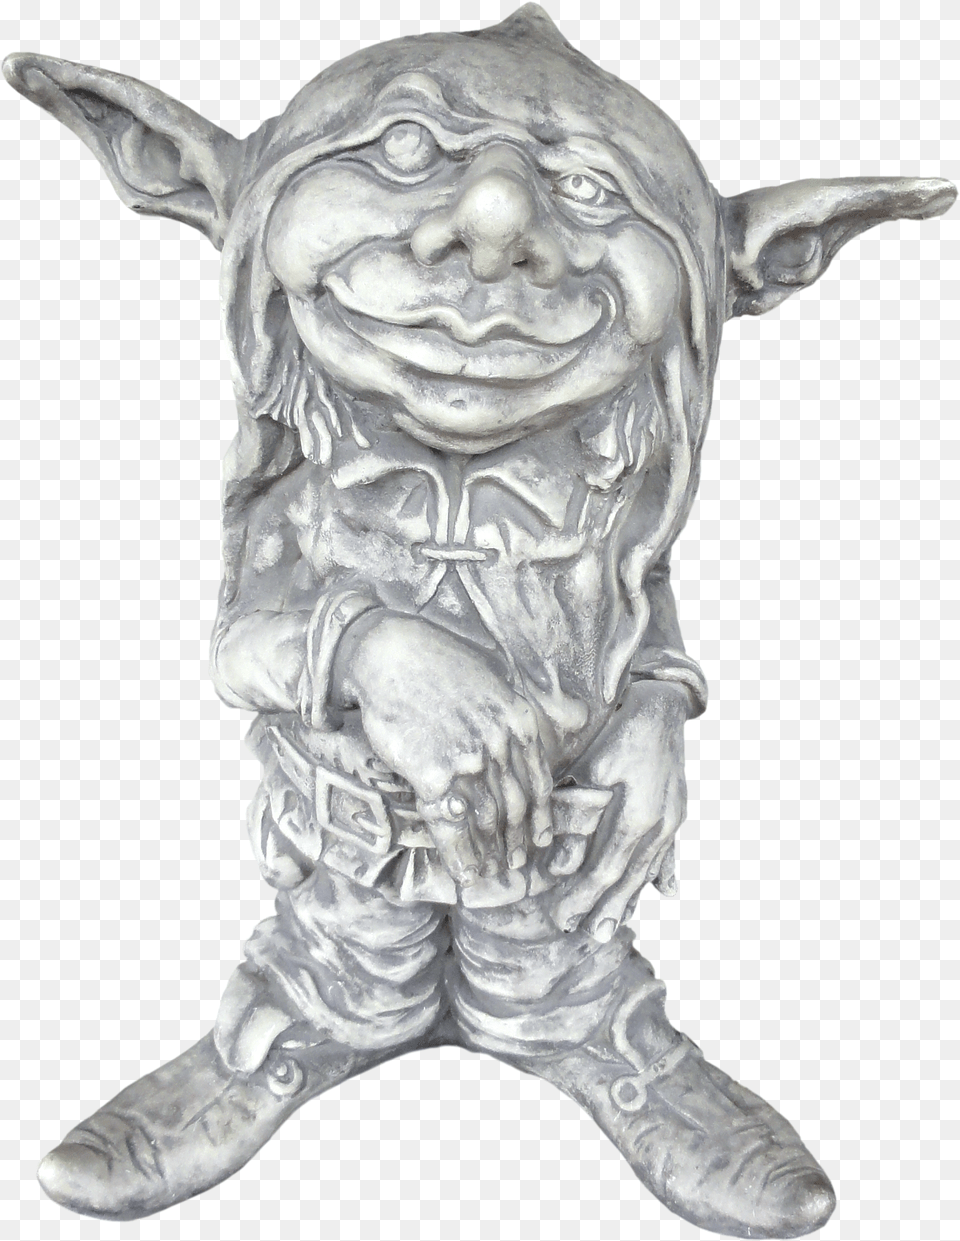 Troll Dwarf, Accessories, Art, Ornament, Baby Free Png